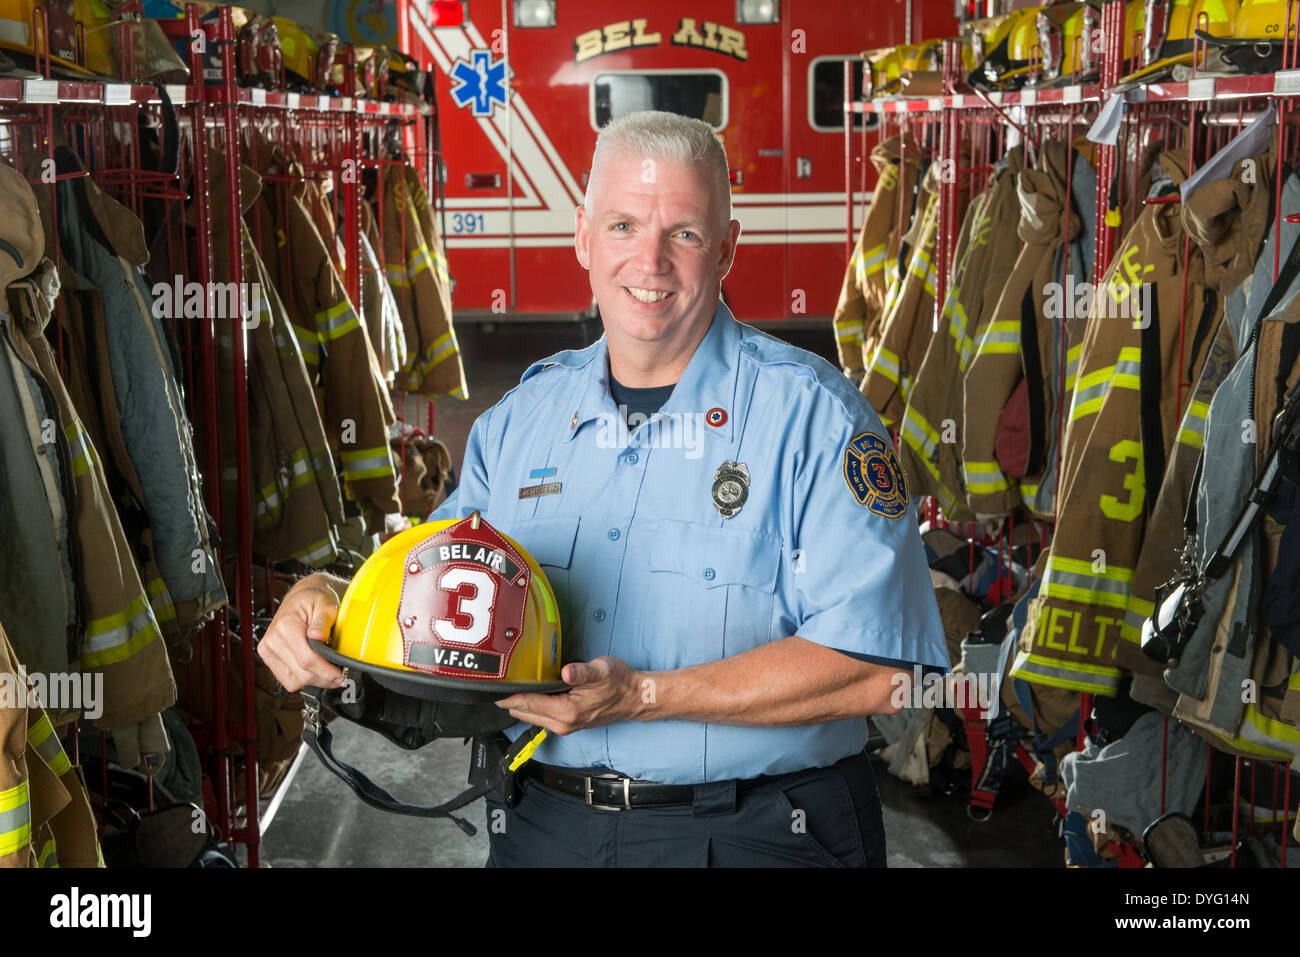 Fire fighter retrato Maryland Foto de stock